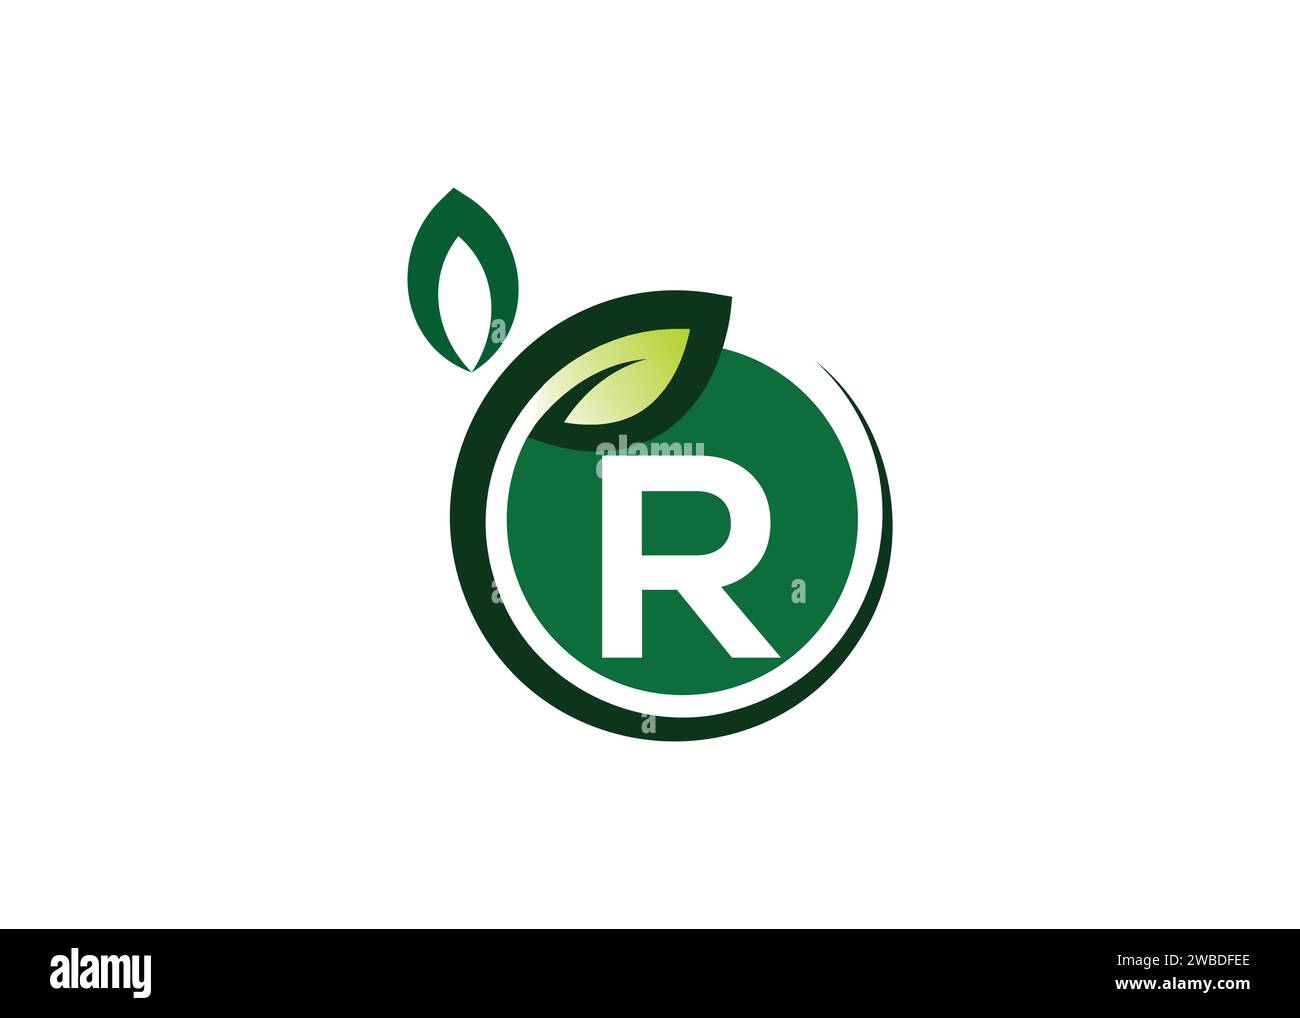 Letter R Green Leaf Logo Design Vektorvorlage. Letter R Nature Growth Leaf Vector Logo Stock Vektor